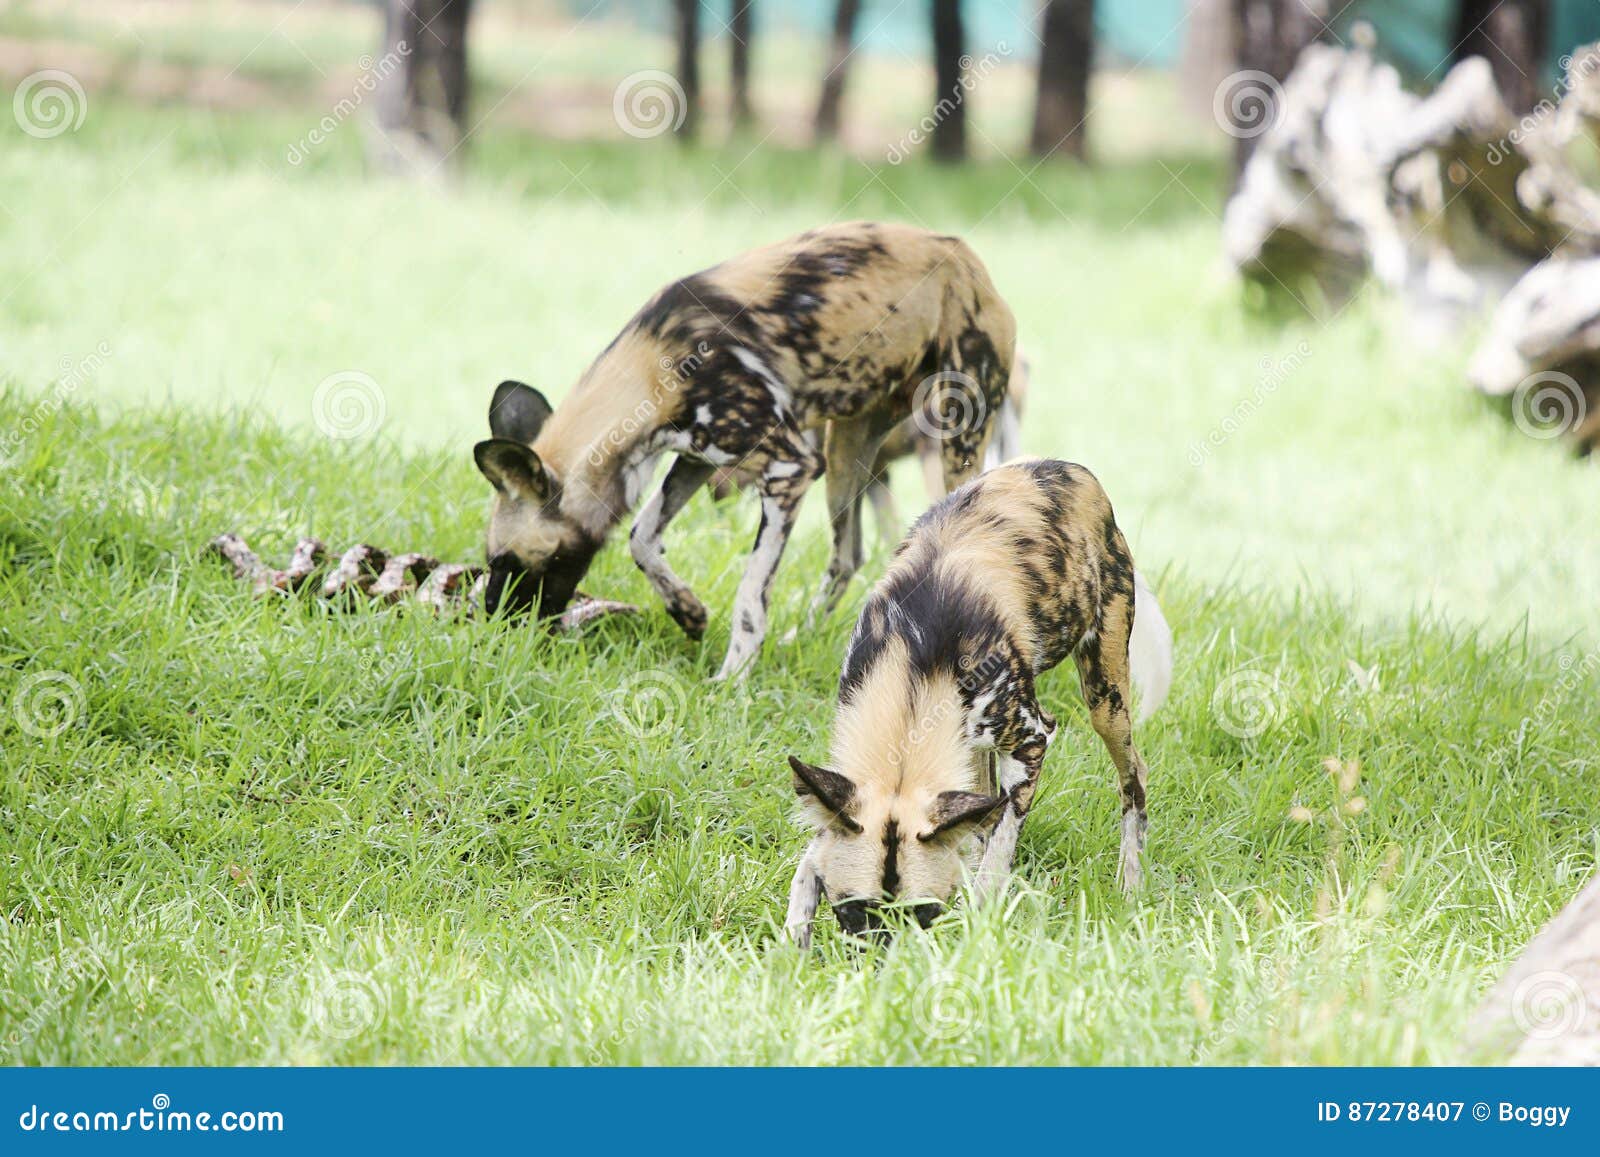 Afrikanische wilde Hunde redaktionelles stockfotografie. Bild von